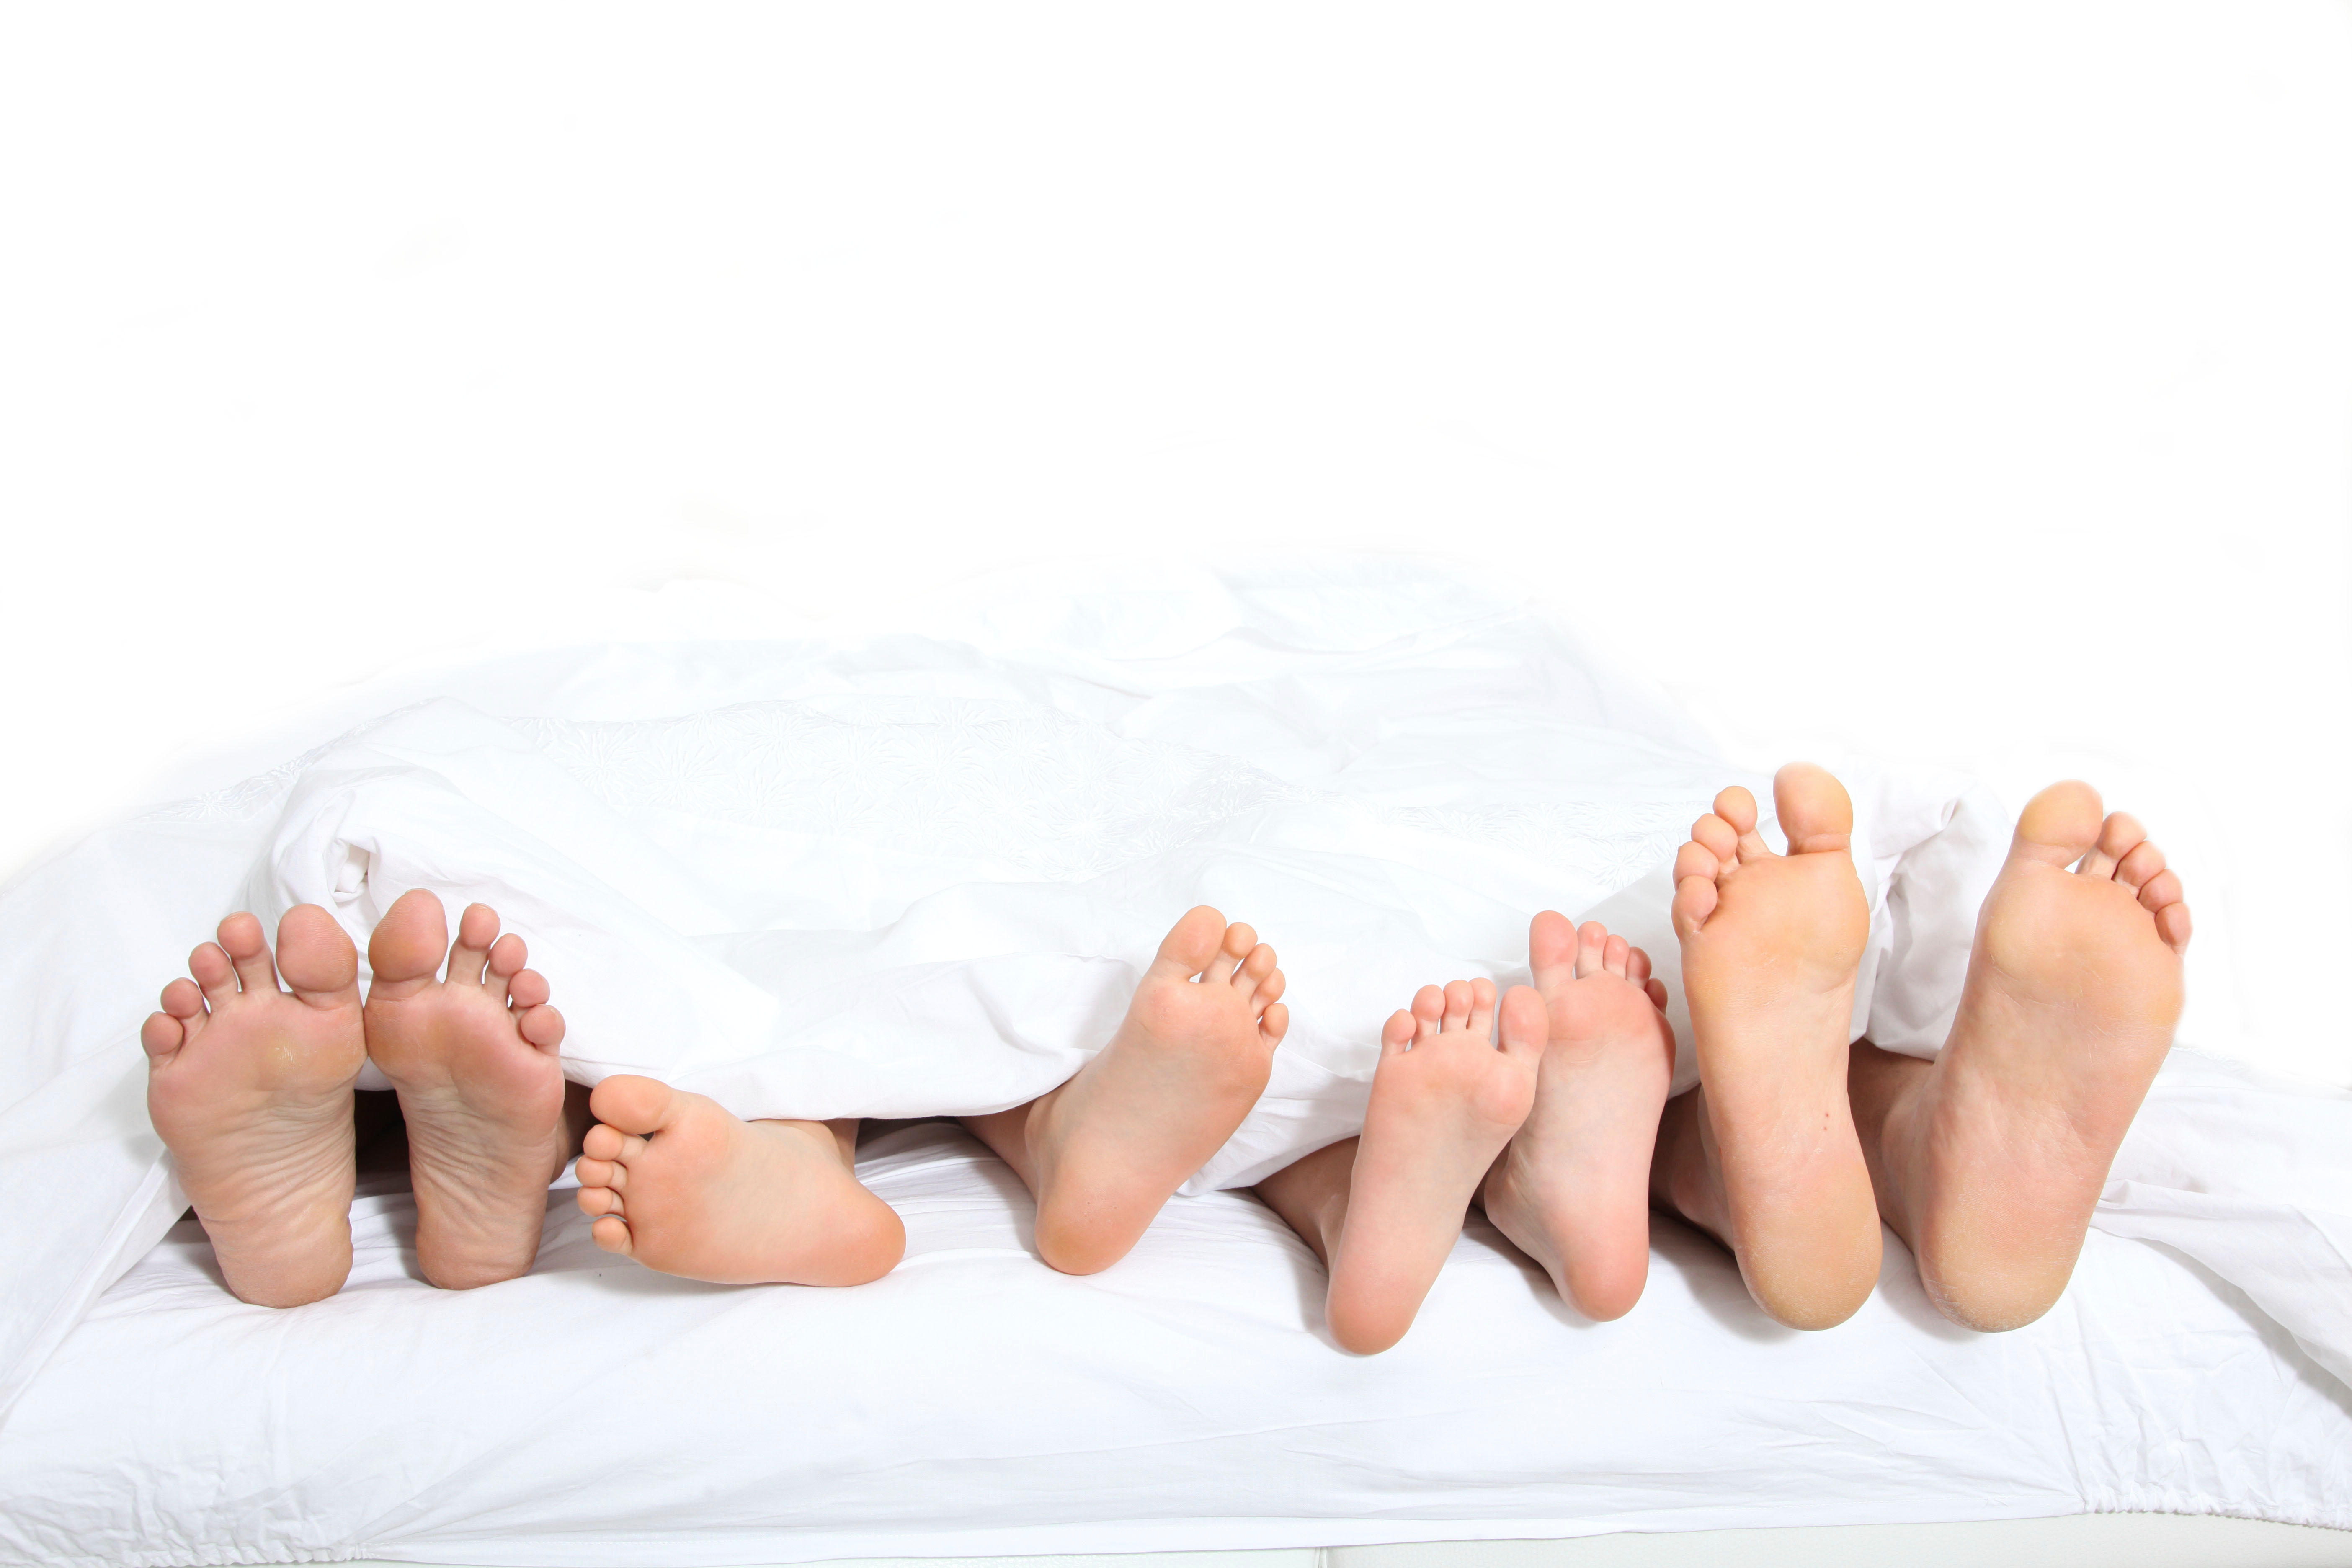 Family feet. Стопы семьи. Семья ноги. Ступни детей в кровати. Ноги семьи в постели.